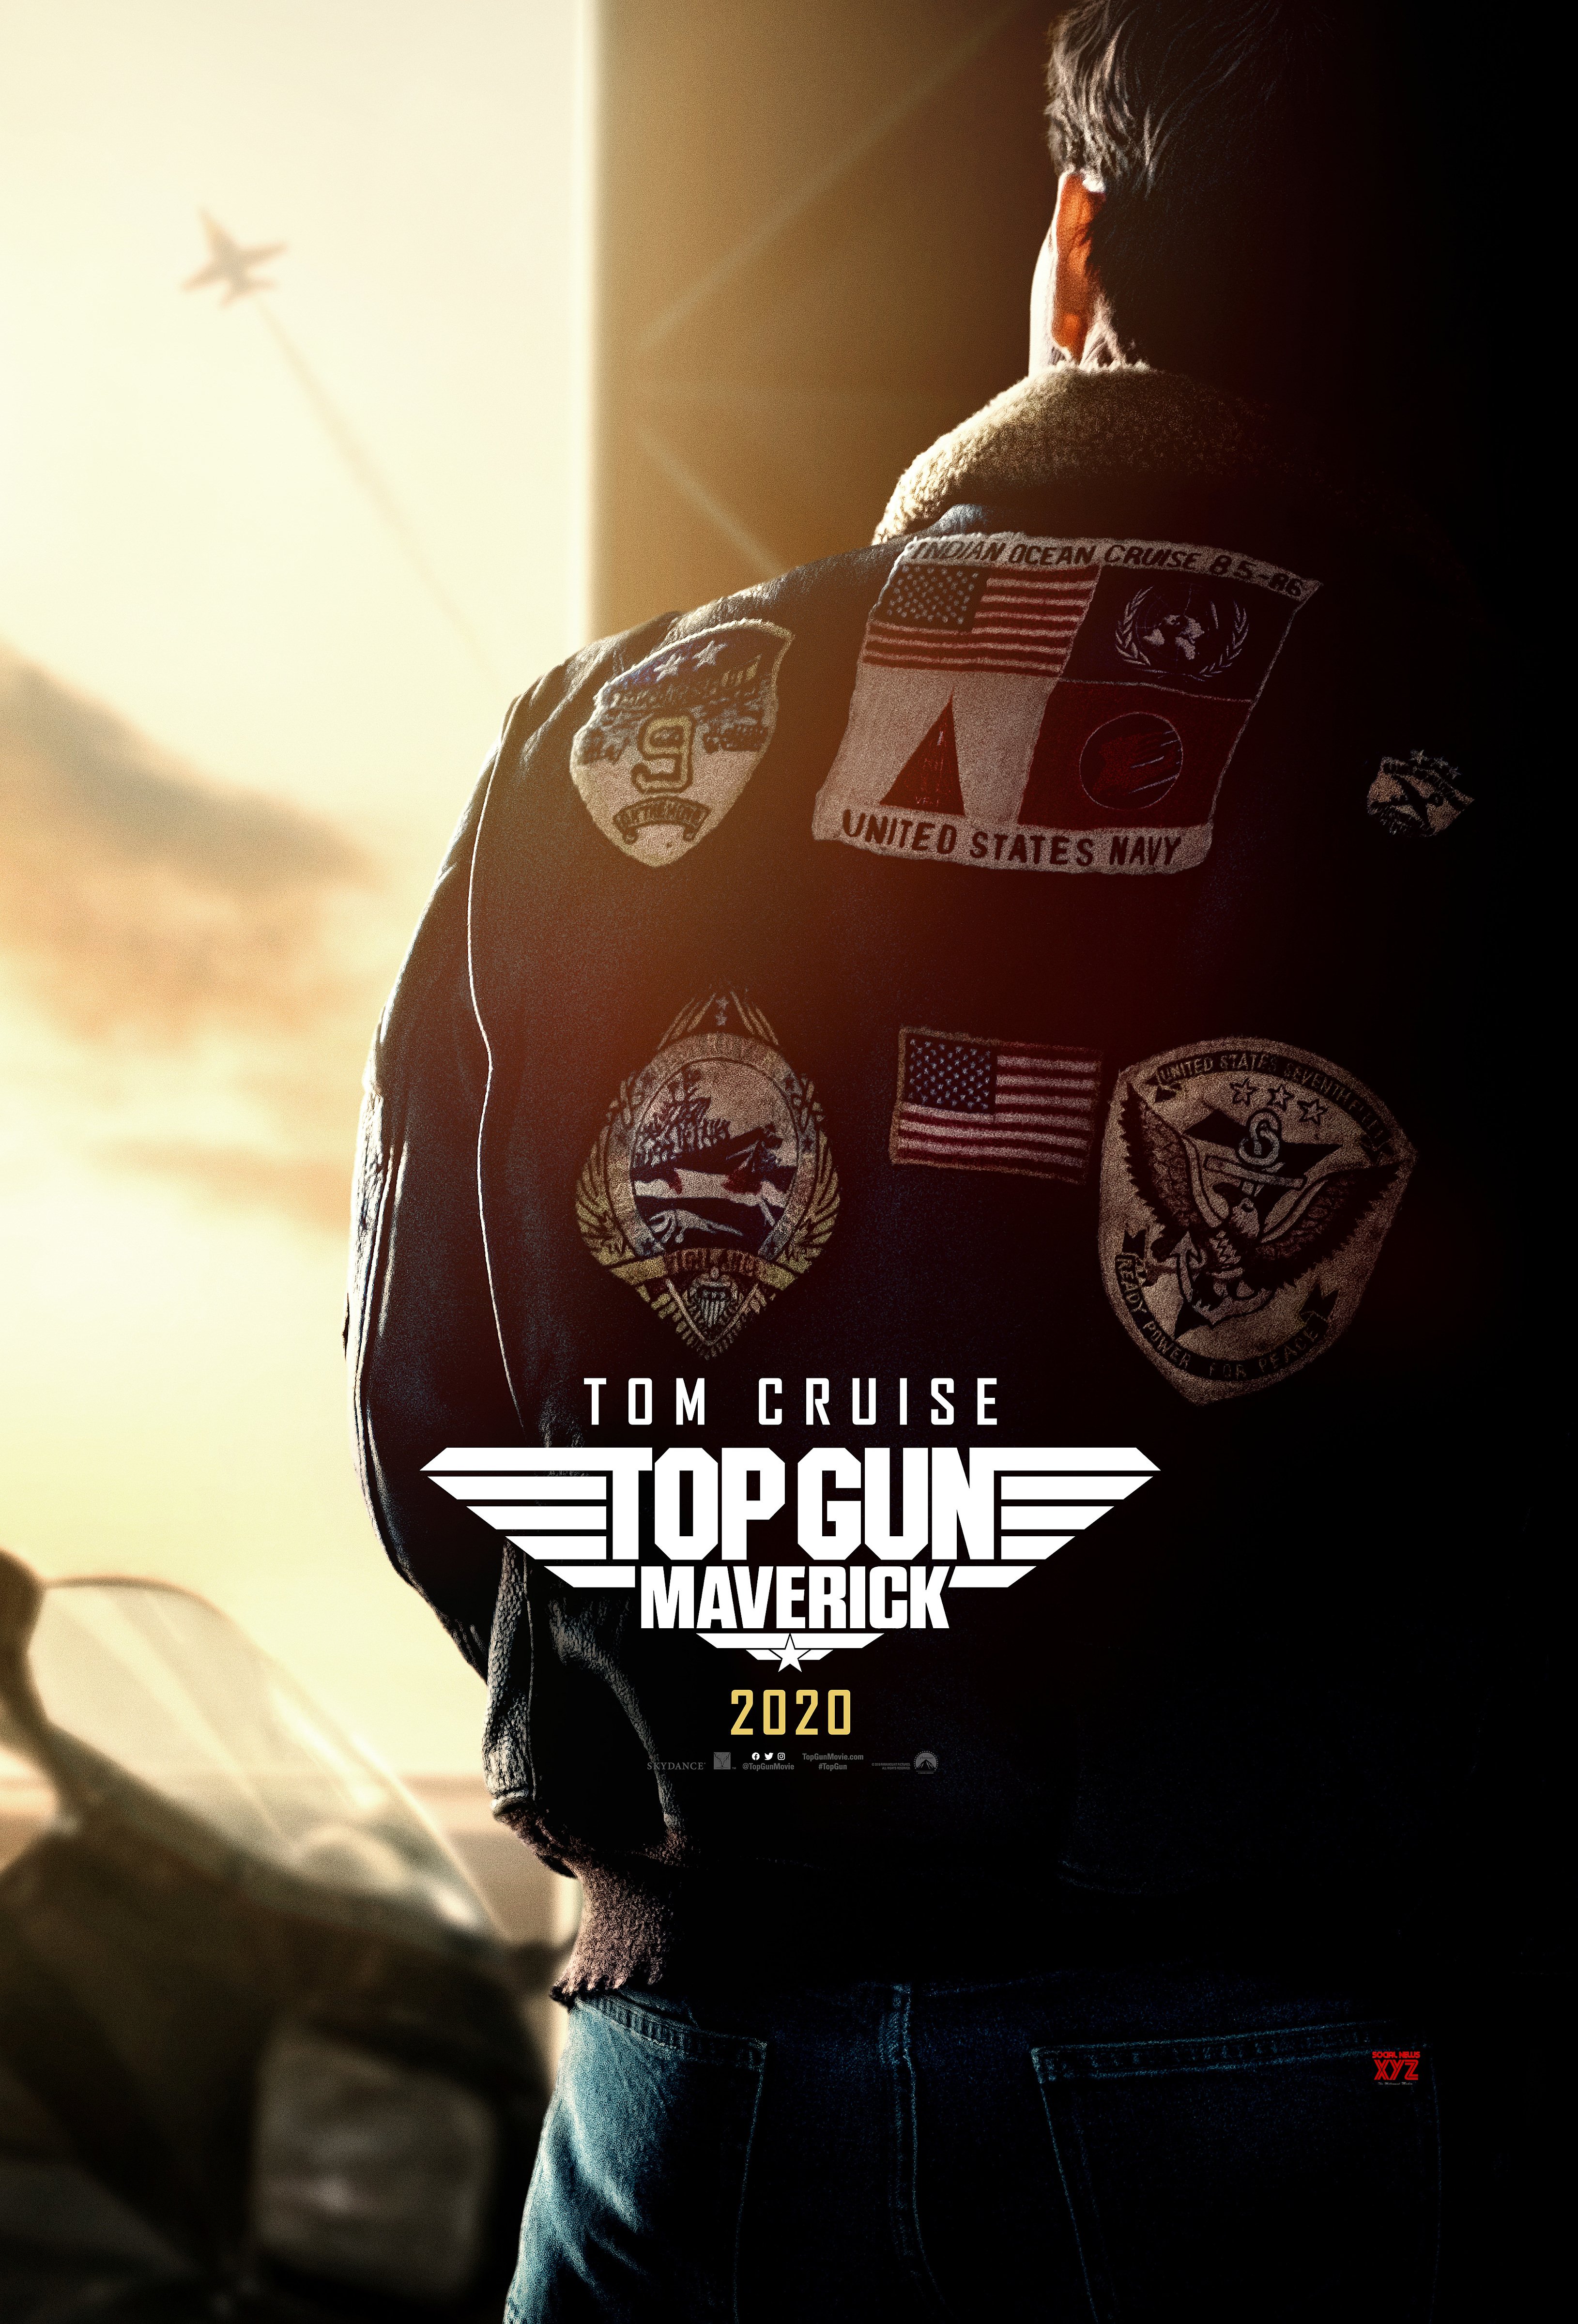 Maverick Movie First Look Hd Poster - Top Gun Maverick 2019 - HD Wallpaper 